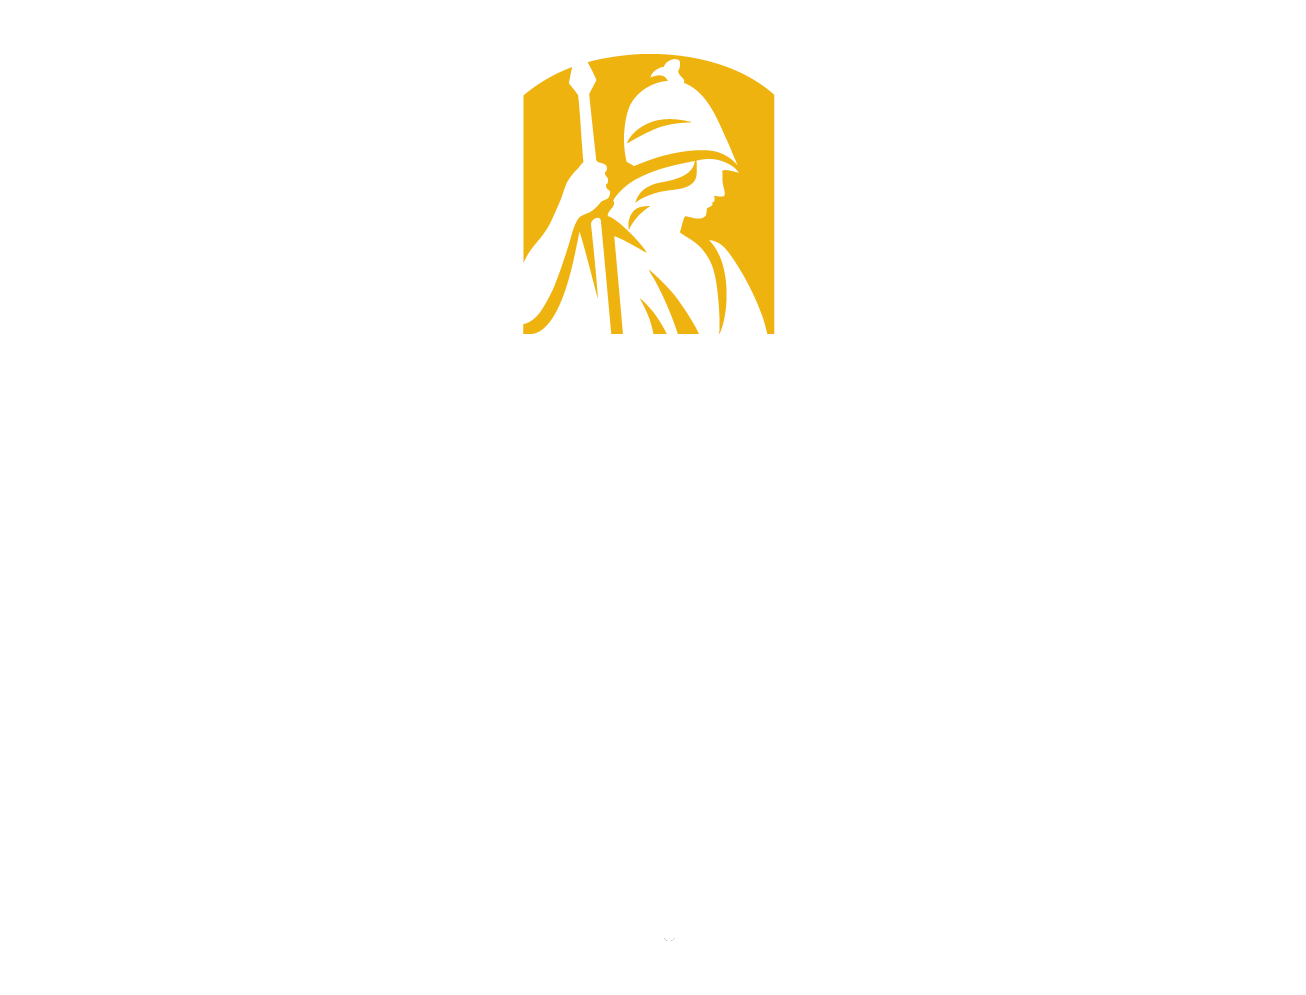 University At Albany white logo